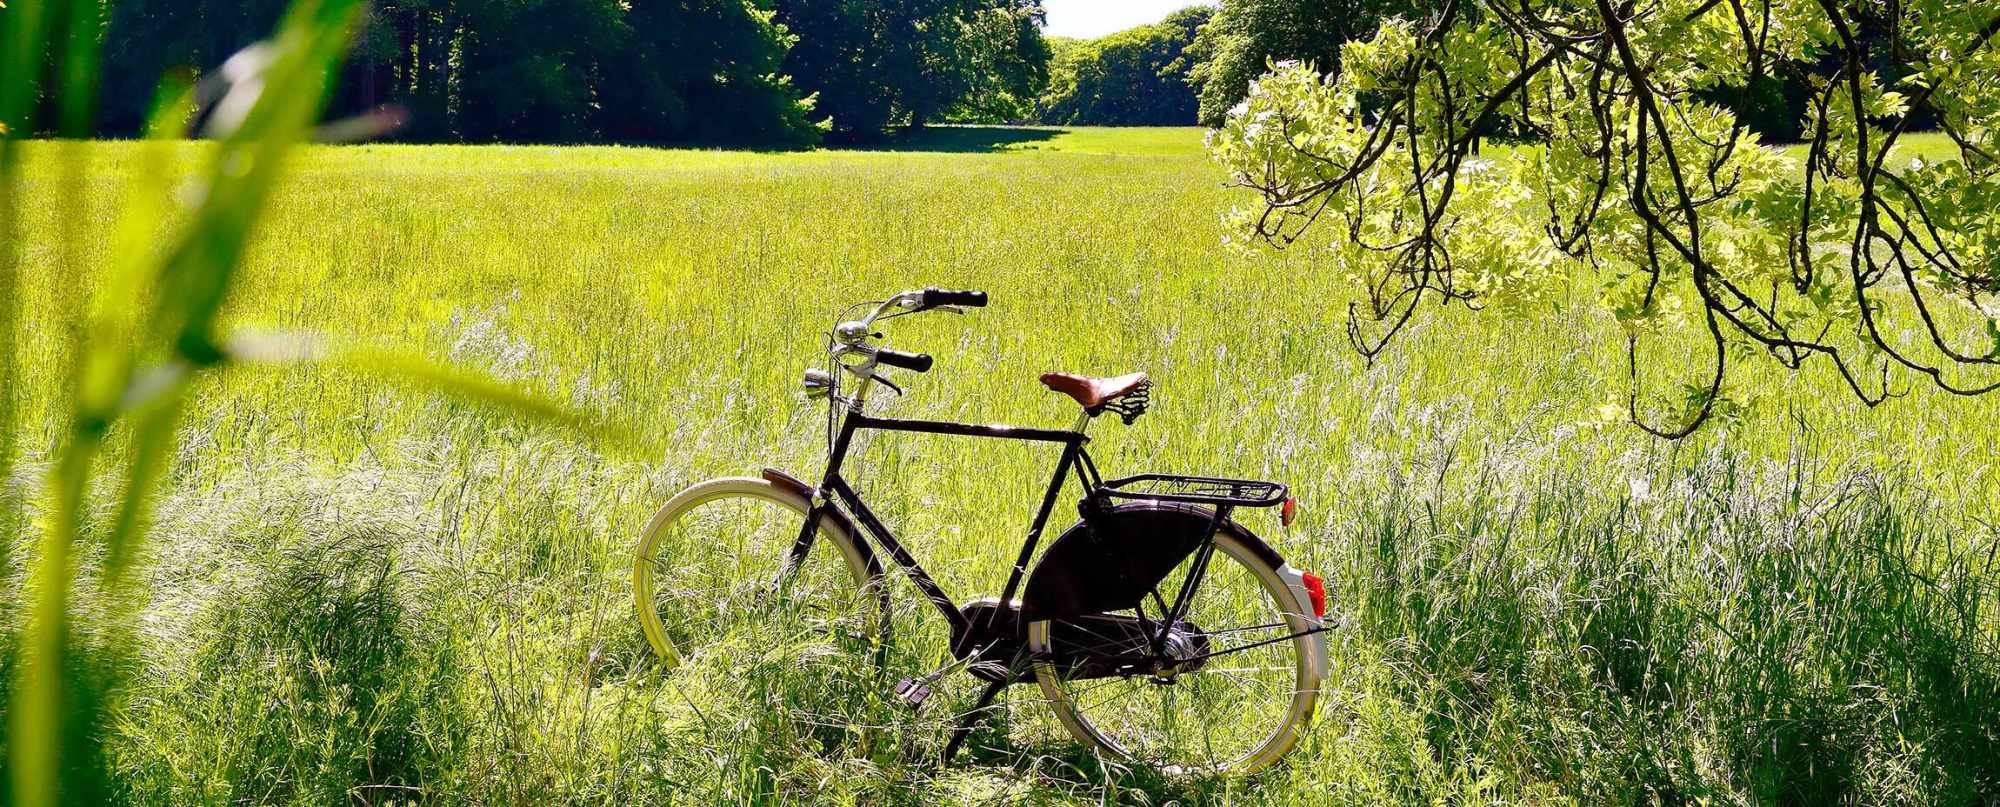 Altes Fahrrad steht auf einer grünen Wiese